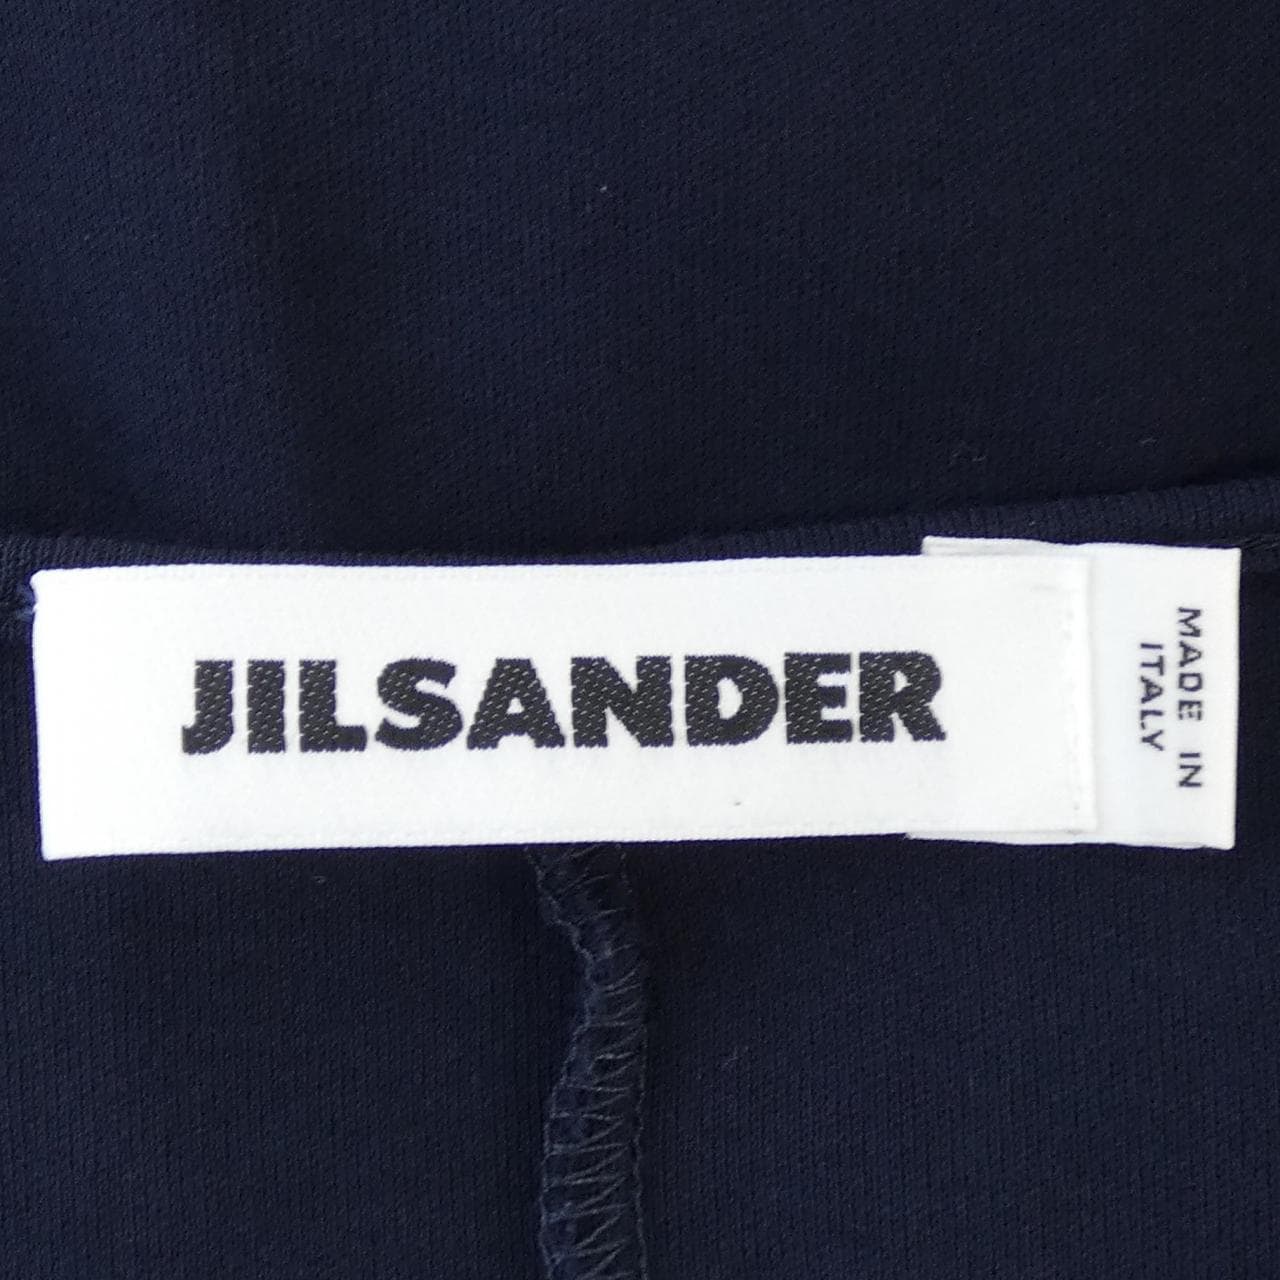 JIL SANDER (Jil Sander) 吉尔·桑德 (Jil Sander) 海贼王